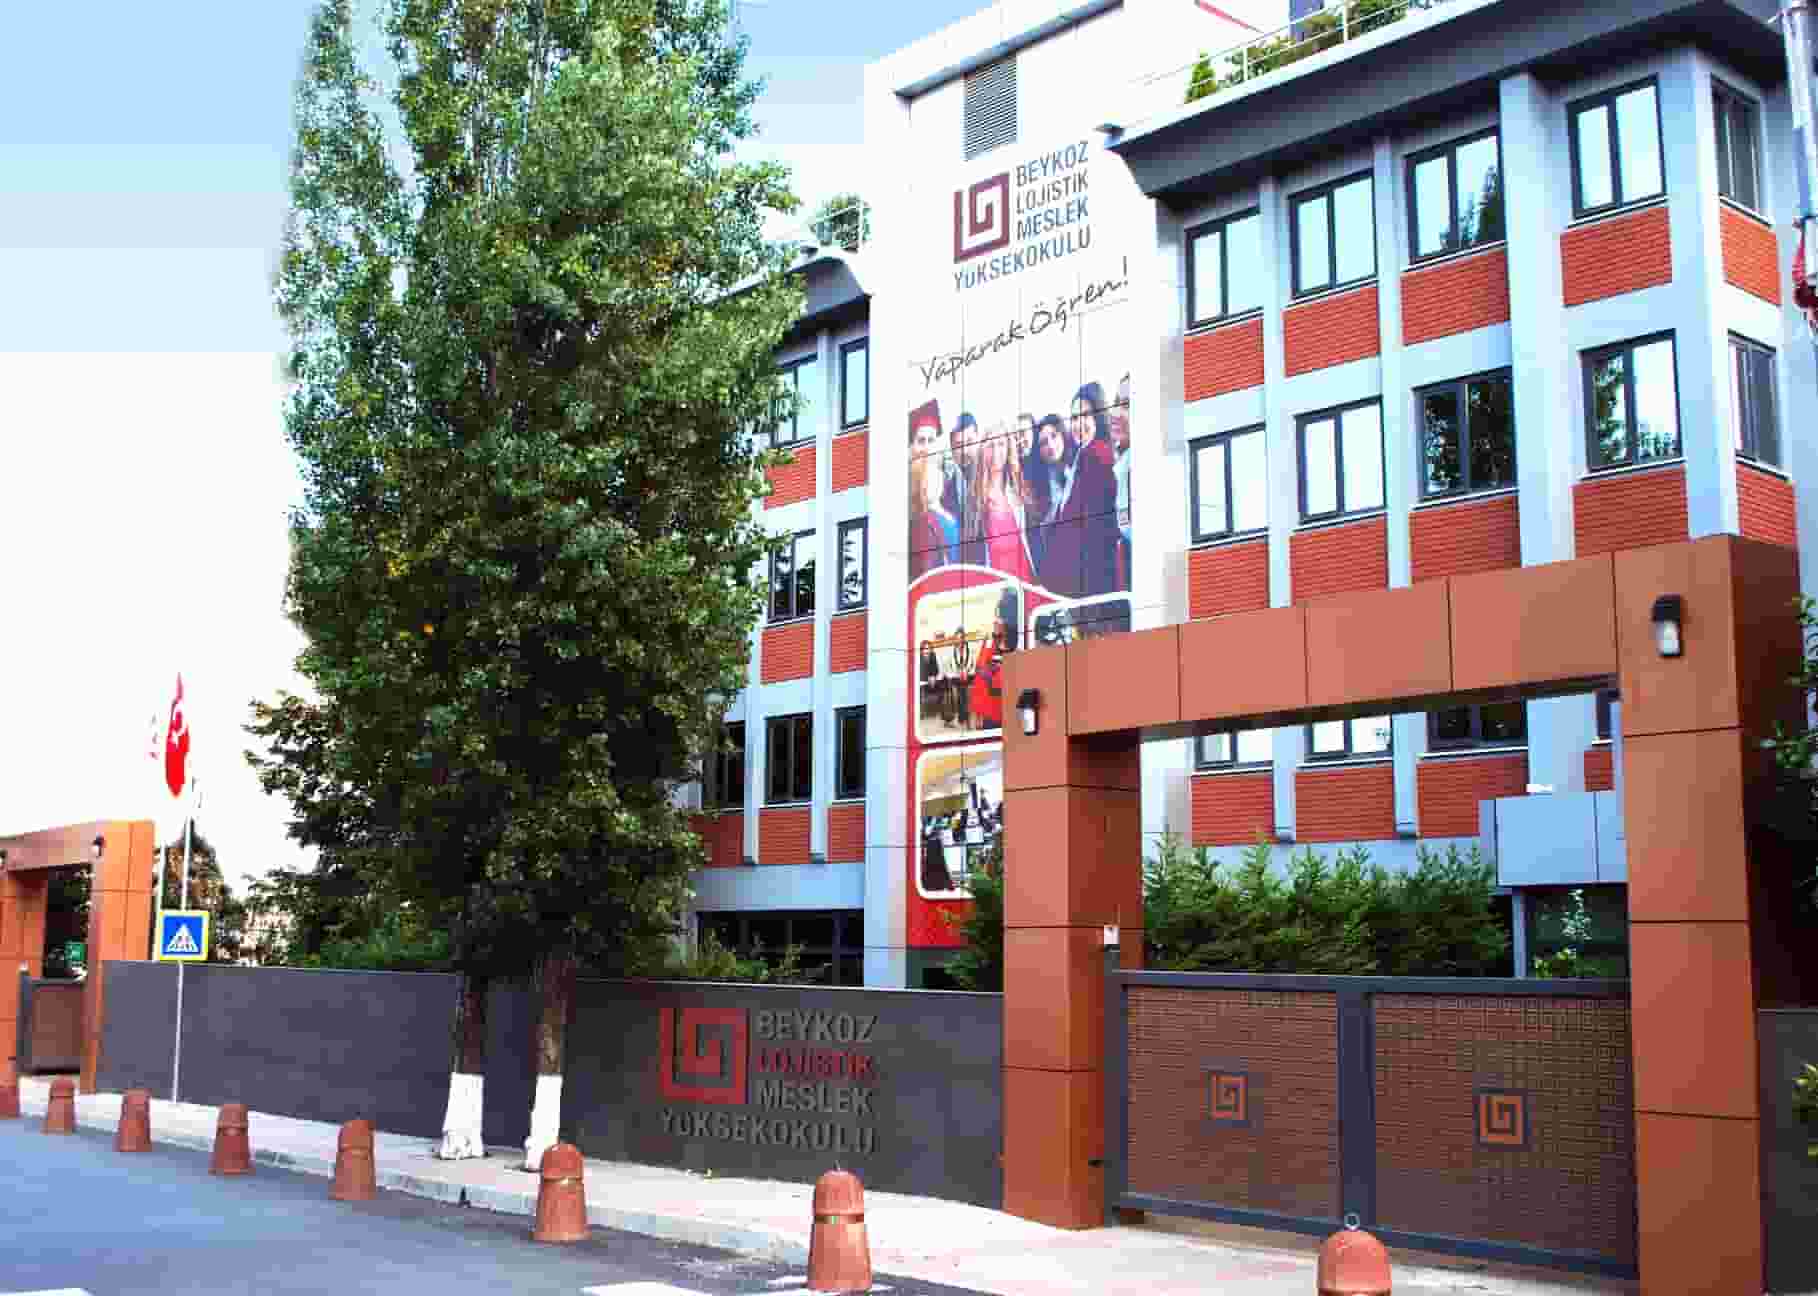 جامعة بيكوز في اسطنبول